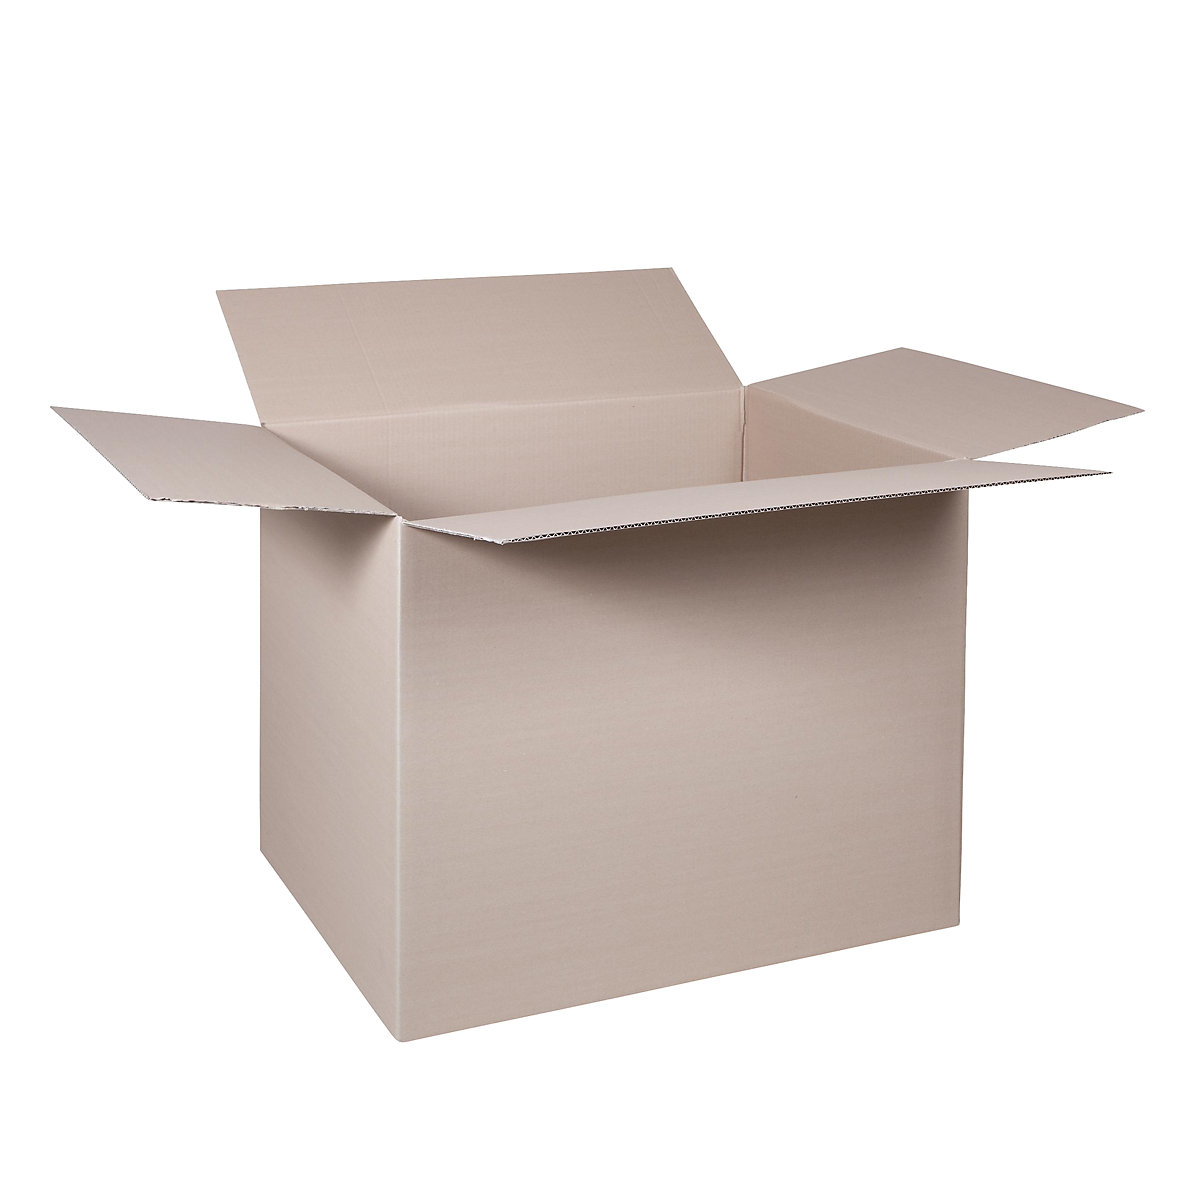 Cutie de carton pliantă, FEFCO 0201, cu 1 strat de carton ondulat, dimensiuni interioare 600 x 400 x 400 mm, amb. 50 buc.-12